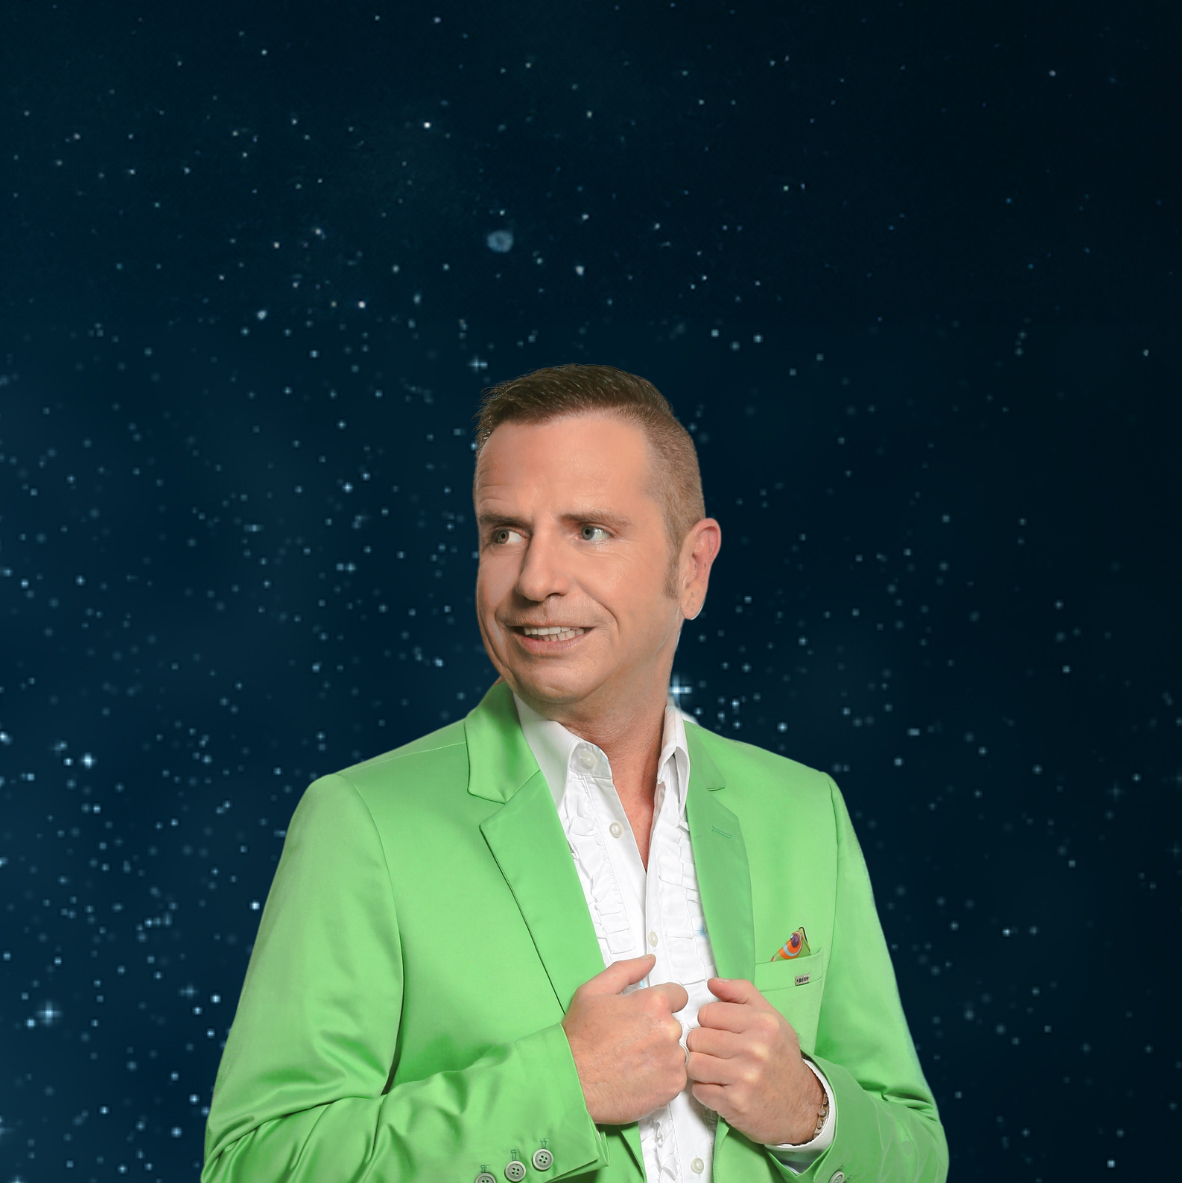 Nikolas Gerdes, Niko G., grüner Anzug, Blick auf die Seite, Sternenhimmel im Hintergrund